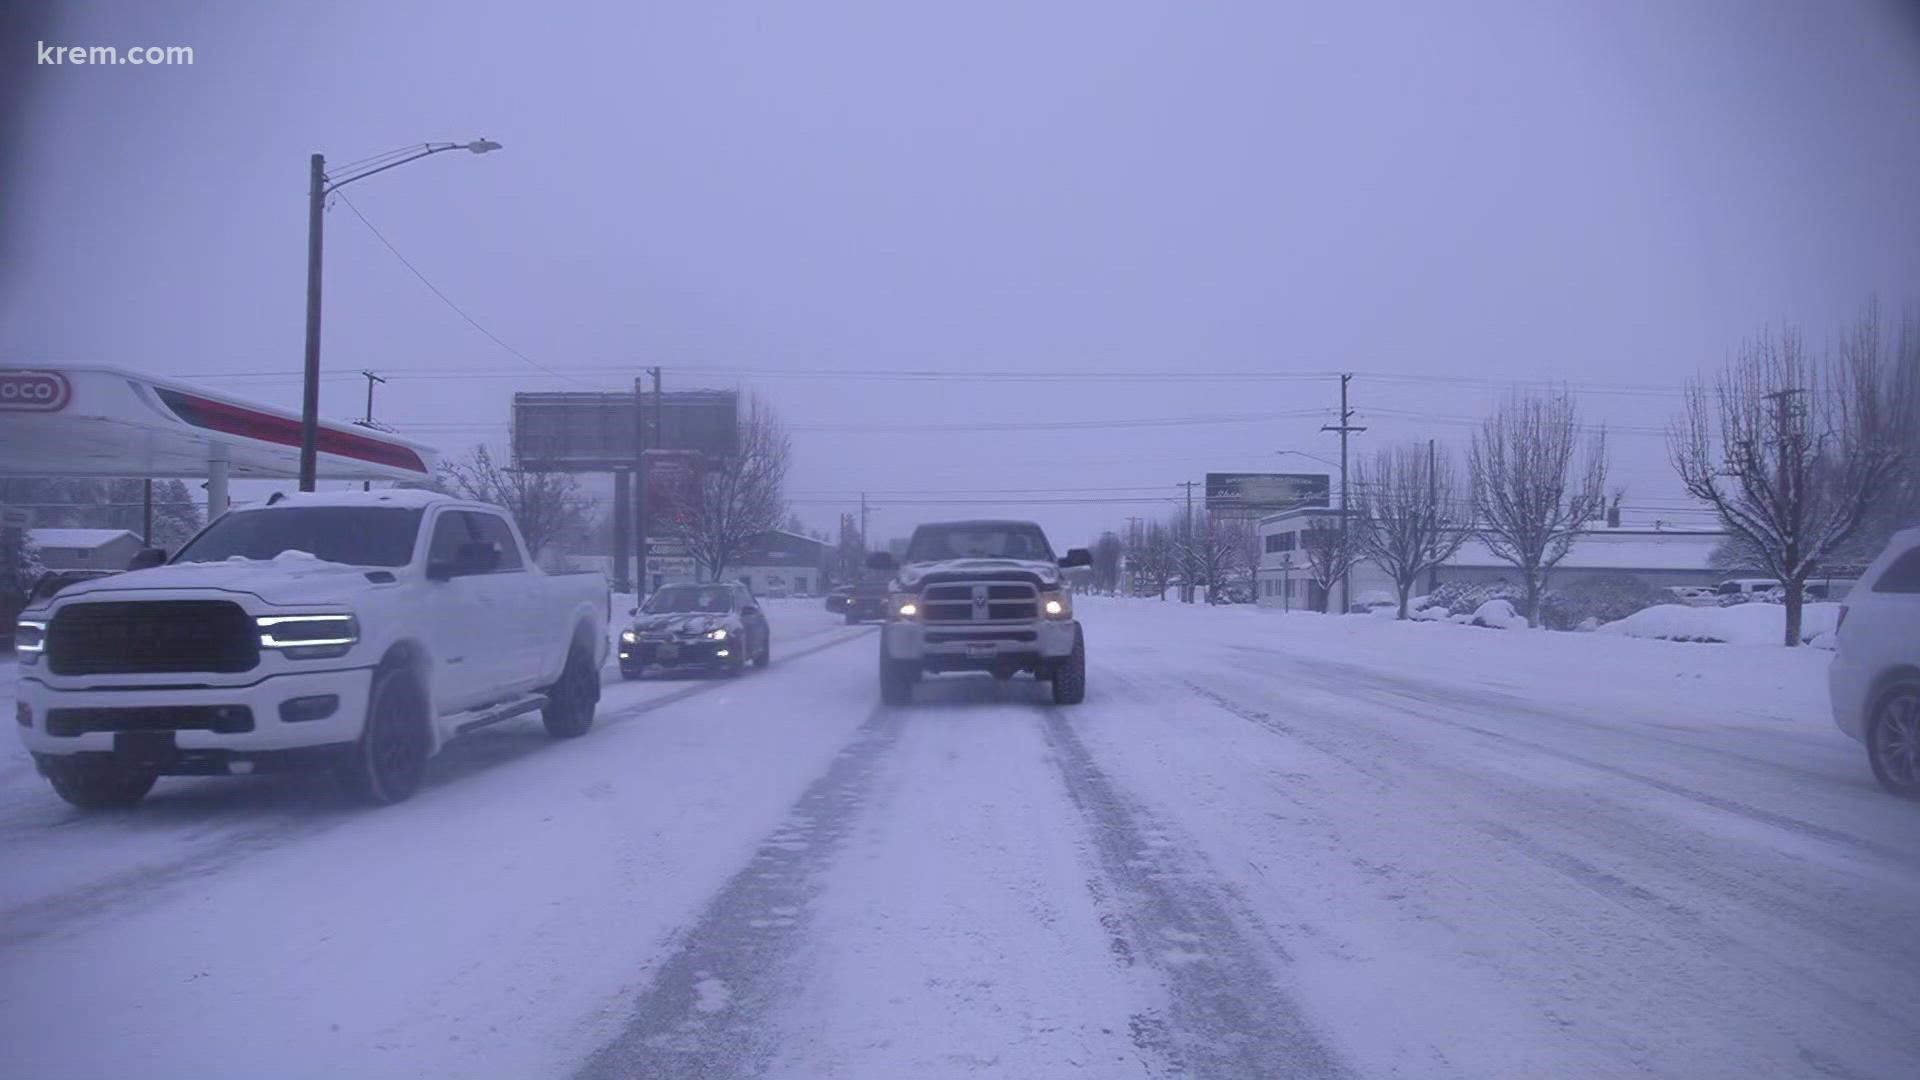 Many roads still slick in Spokane area after heavy snow